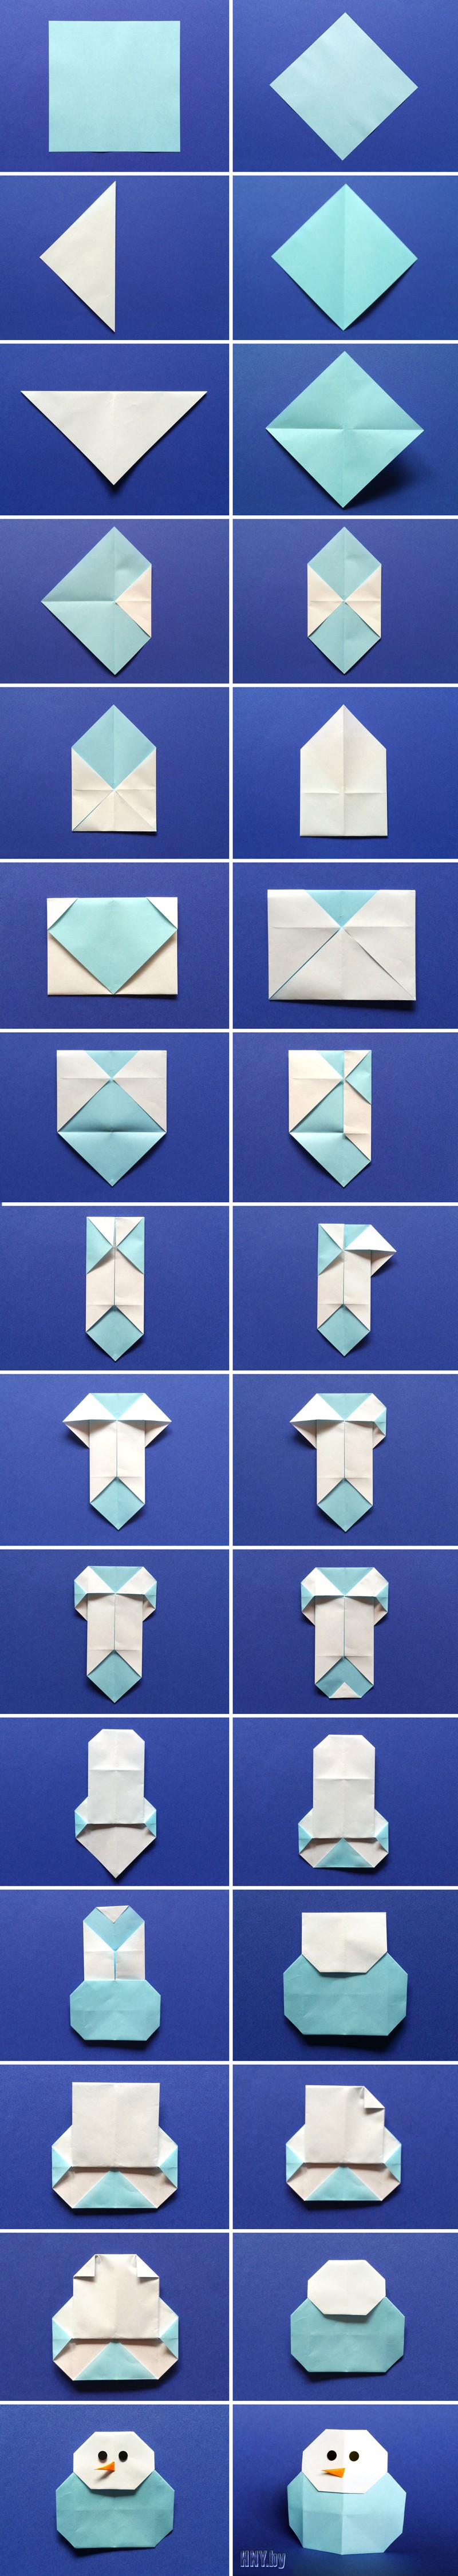 Поделки из бумаги оригами: как сделать снеговика. Пошаговая схема